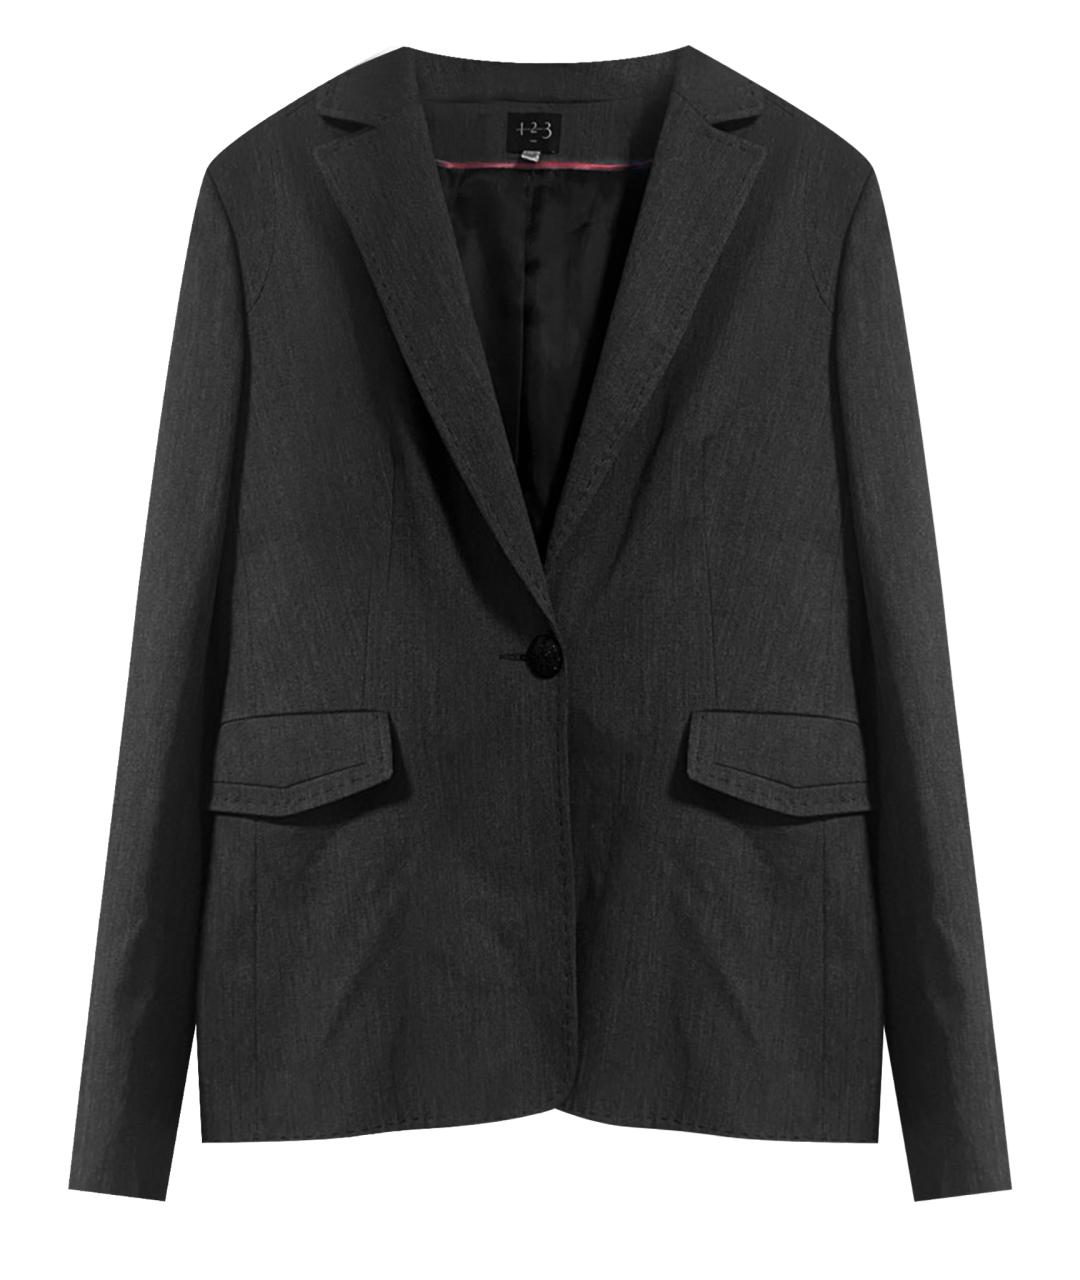 123 Серый вискозный жакет/пиджак, фото 1